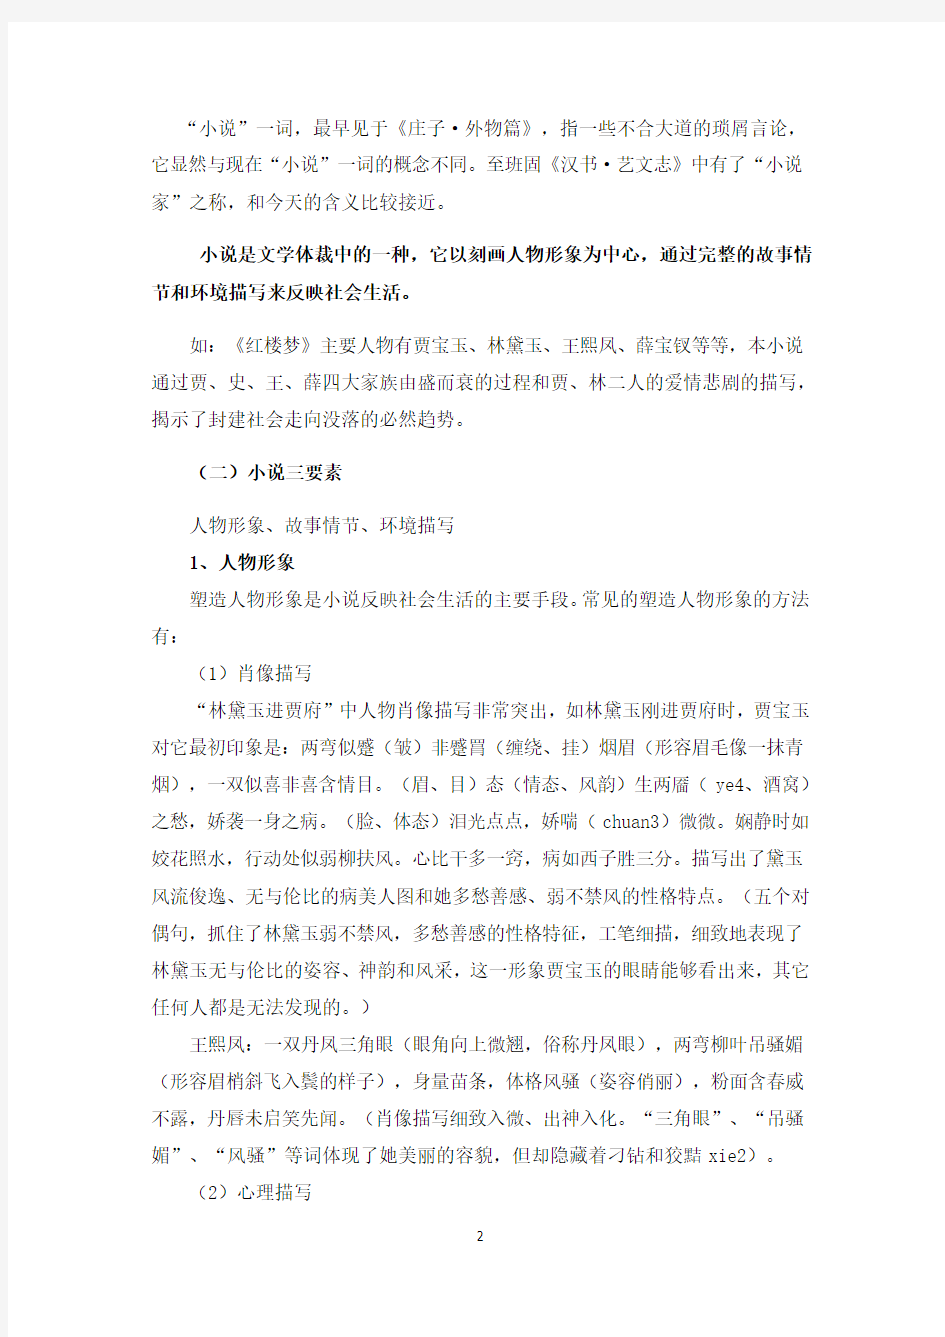 中国小说发展历程及各时期代表作(2020年7月整理).pdf